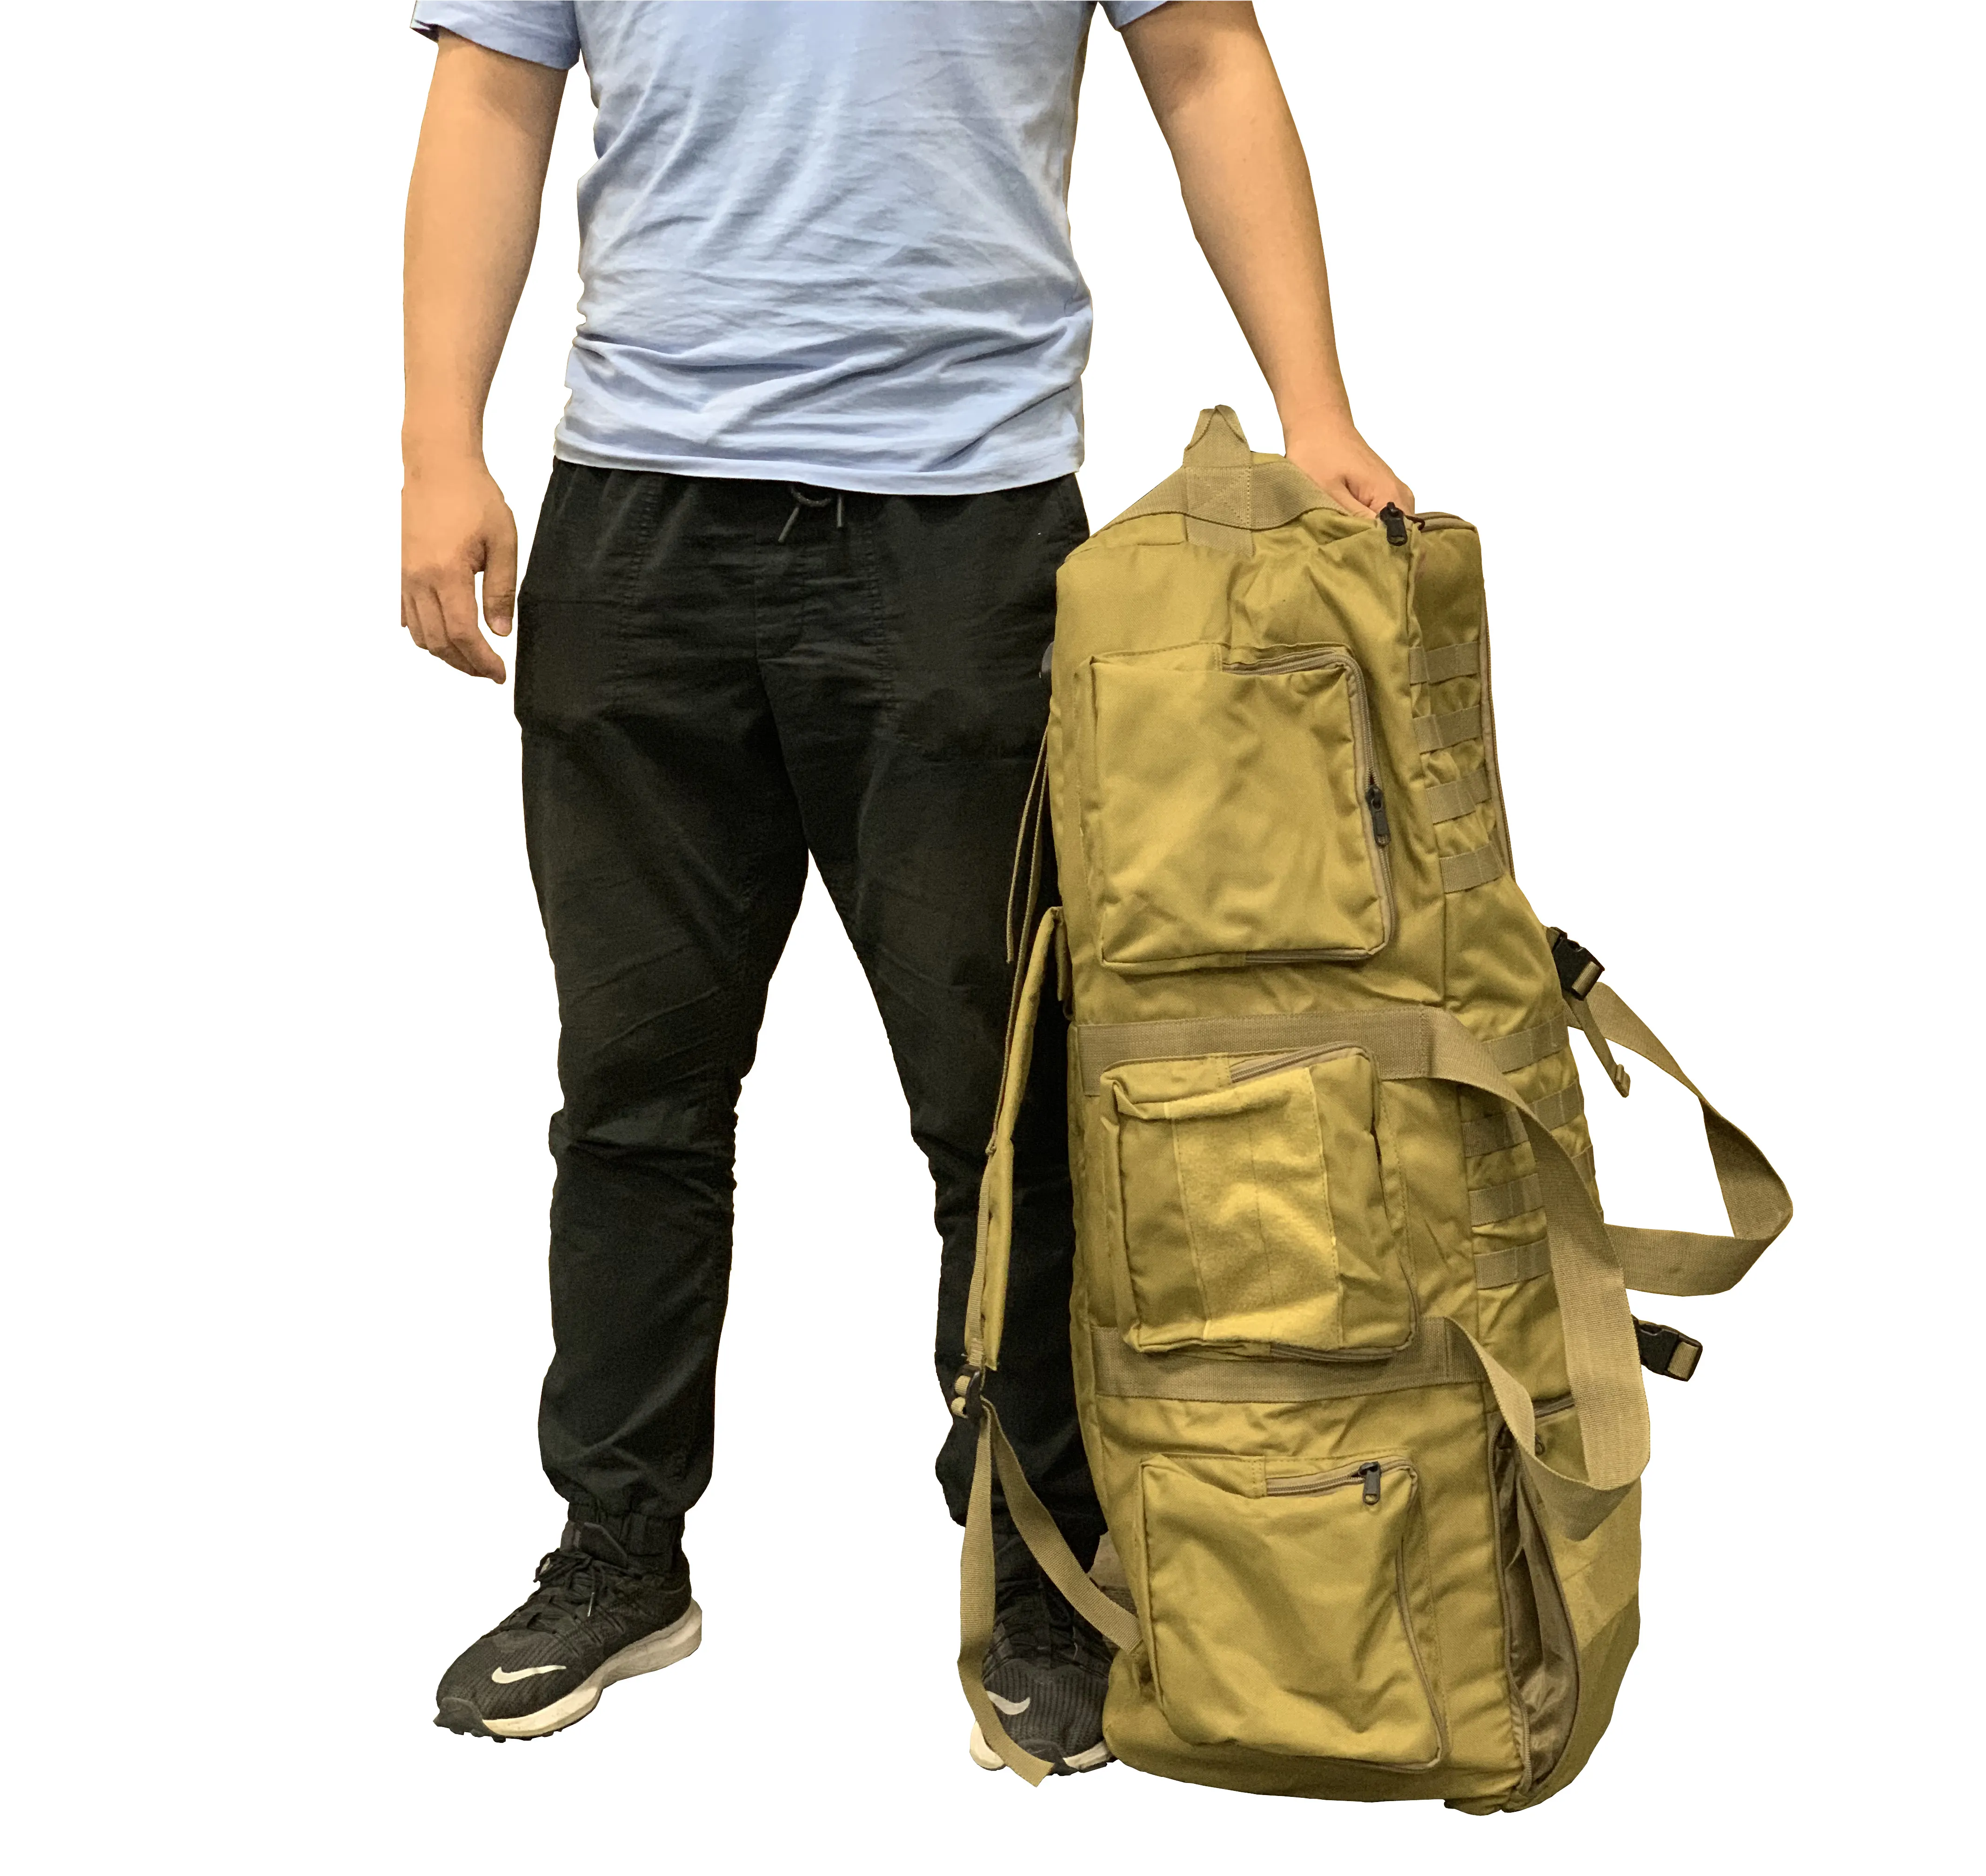 Военный избыточный камуфляжный рюкзак большого размера в стиле милитари армии США